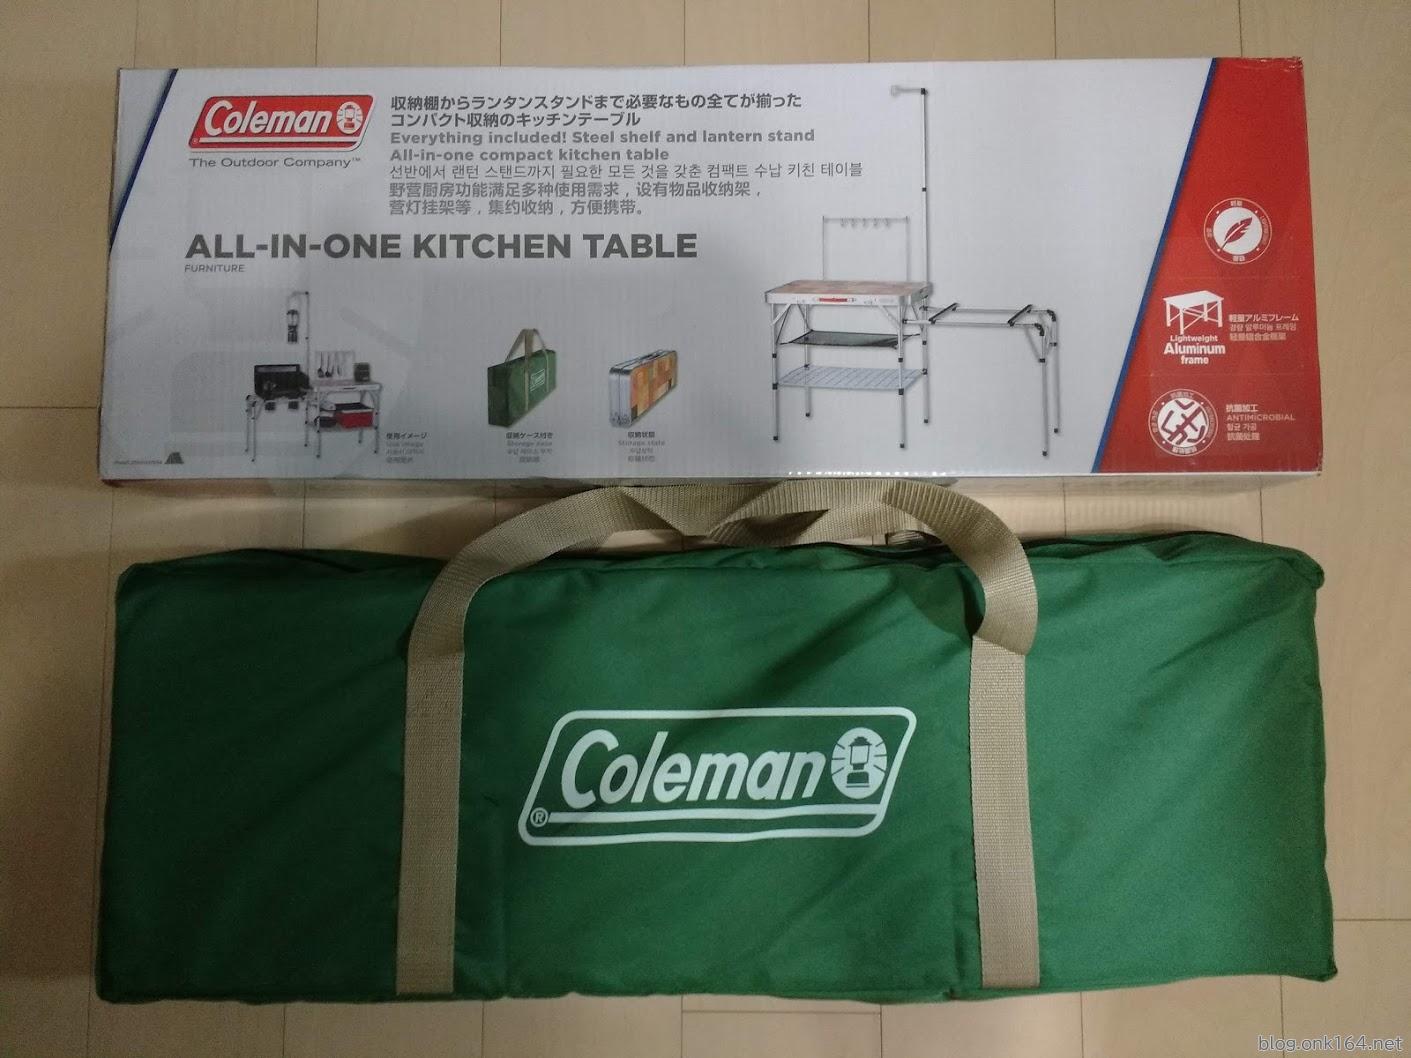 コールマン オールインワン キッチンテーブルのサイズ・重さ実測レビュー | アウトドア・キャンプ | ONK Blog